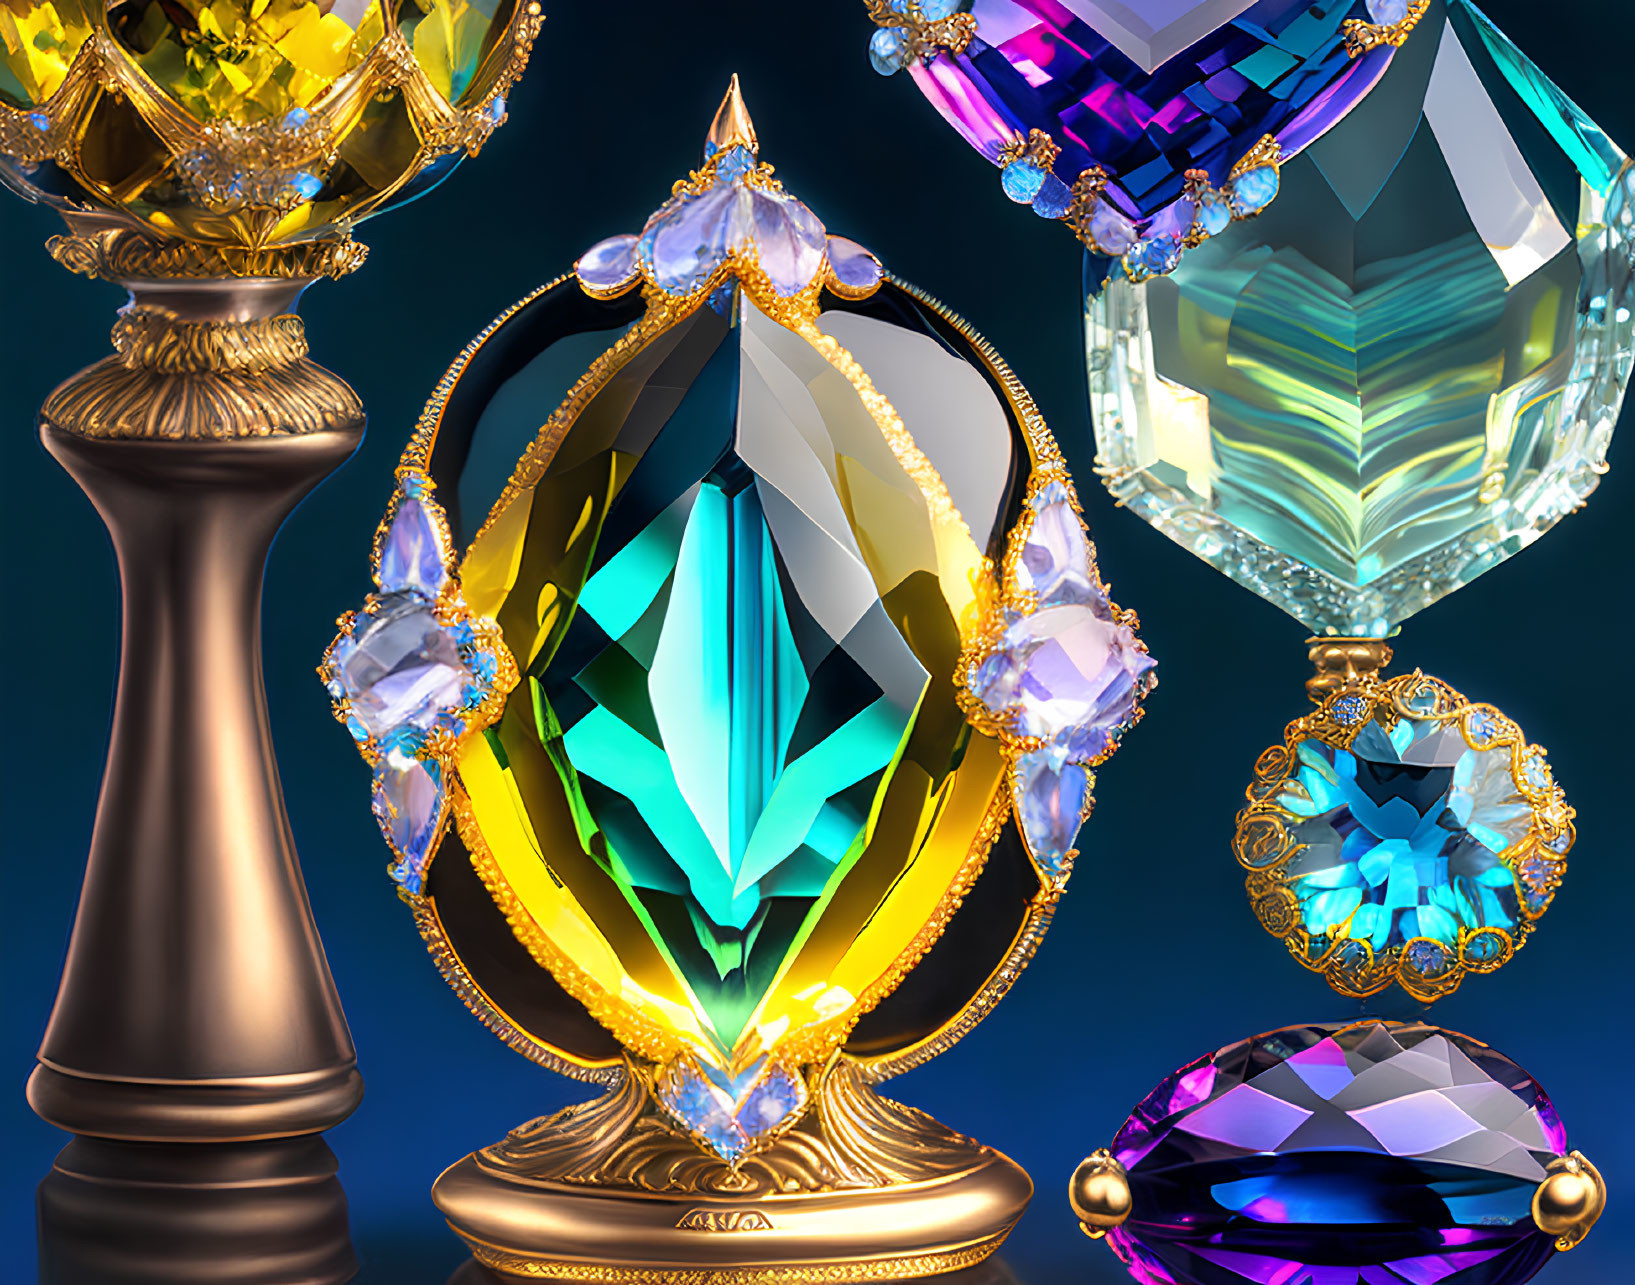 Colorful Gemstones on Golden Pedestals Against Blue Background